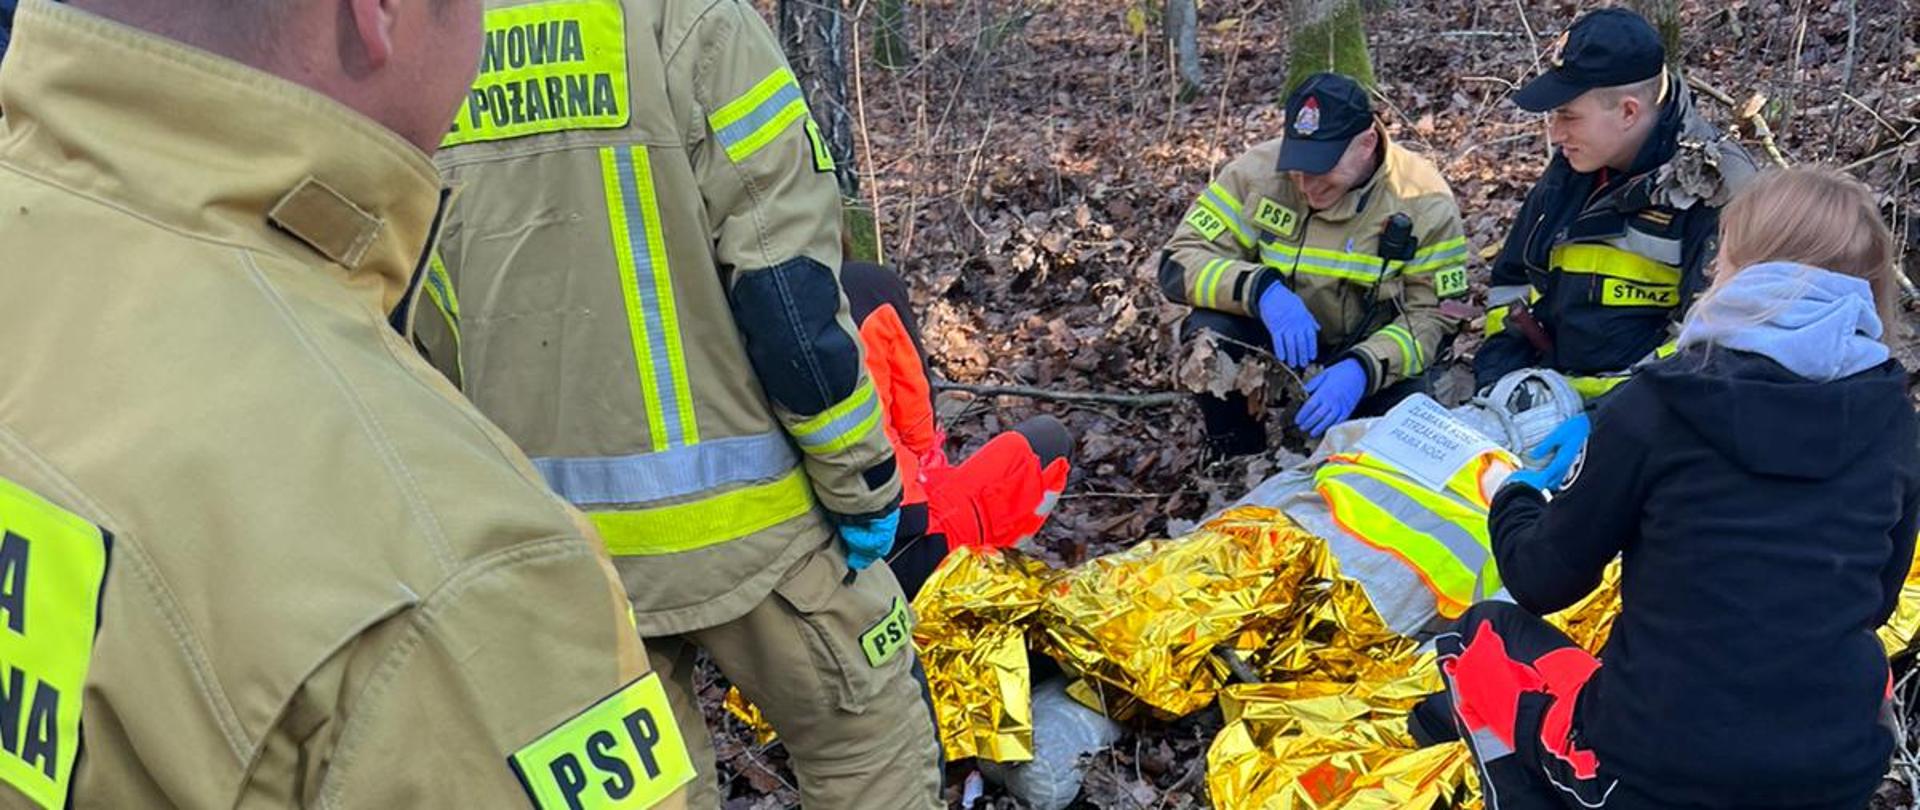 Strażacy z ratownikami medycznymi symulują udzielenie pomocy medycznej manekinowi pozorującemu poszkodowanego odnalezionego w lesie.